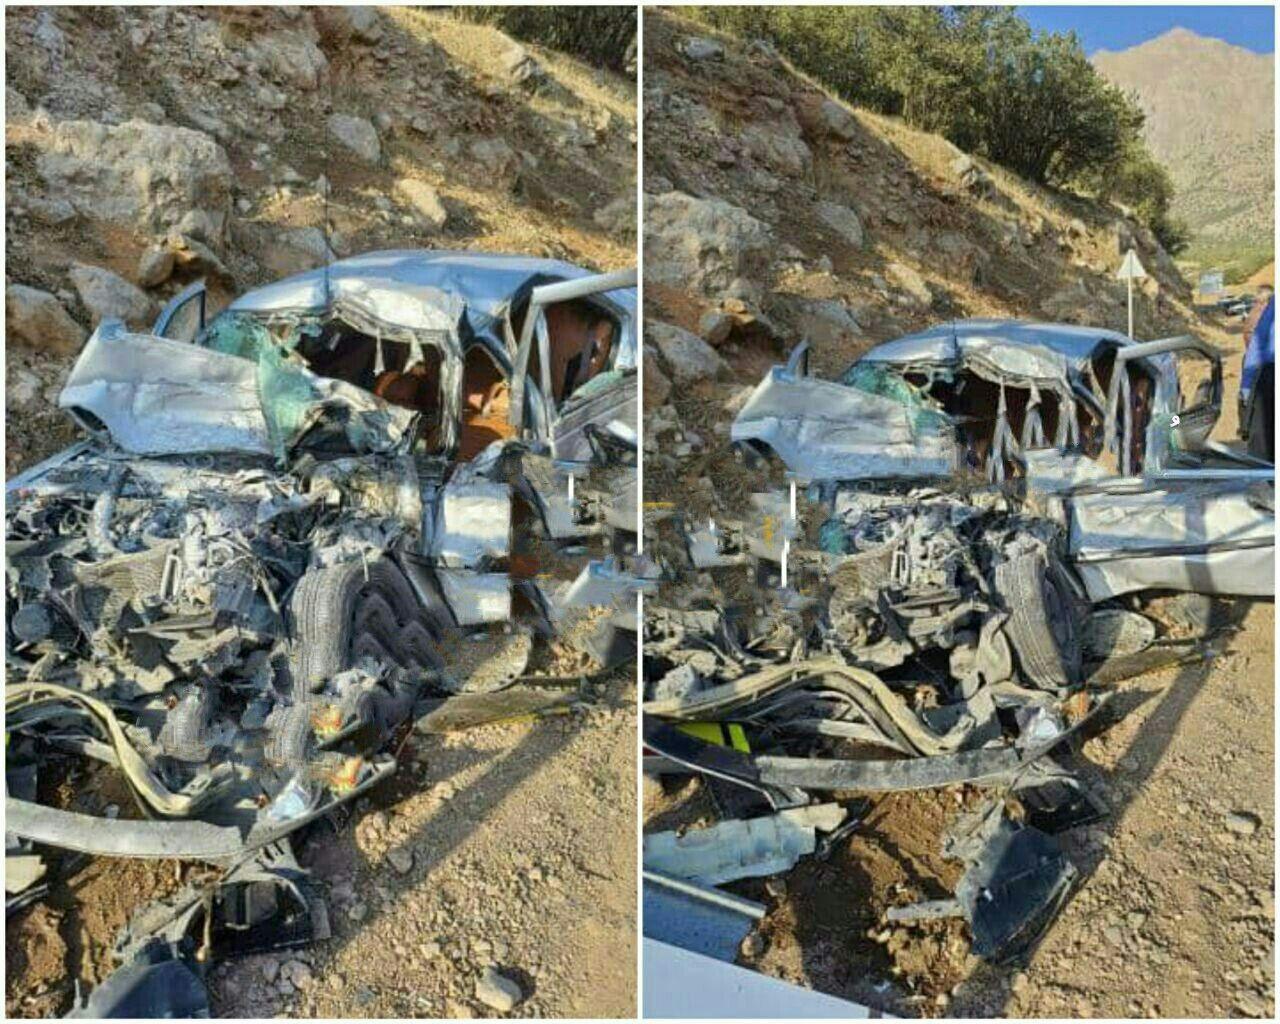 ۲ نفر در سوانح رانندگی کرمانشاه جان باختند